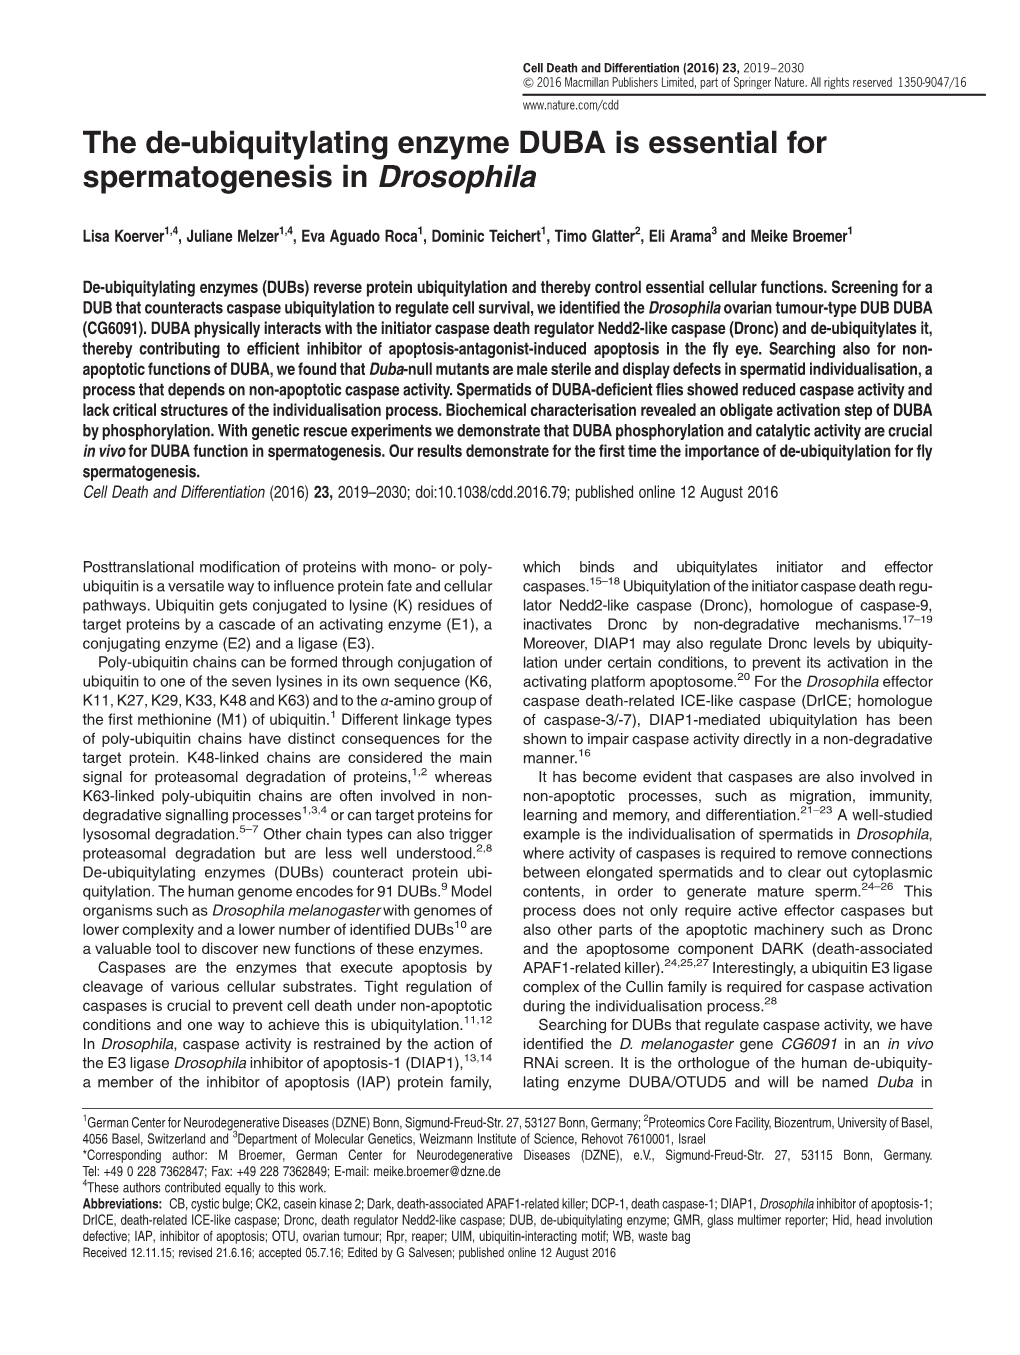 The De-Ubiquitylating Enzyme DUBA Is Essential for Spermatogenesis in Drosophila